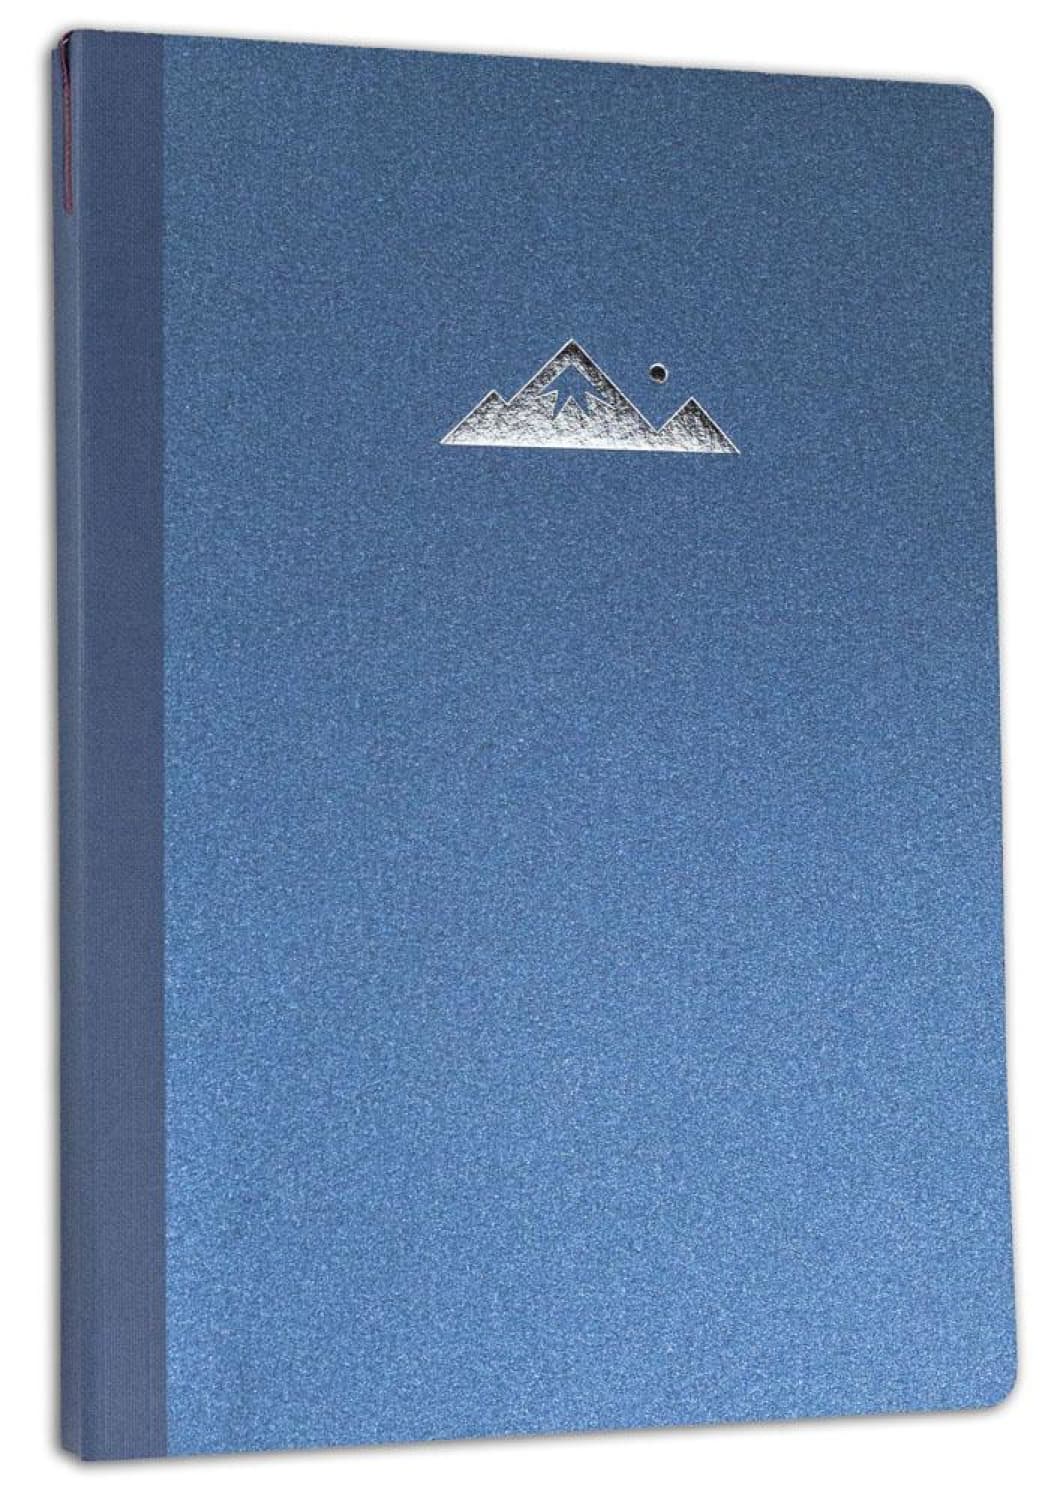 Itoya Profolio Oasis Summit Notebook in Metallic Blue - B6 - Goldspot Pens